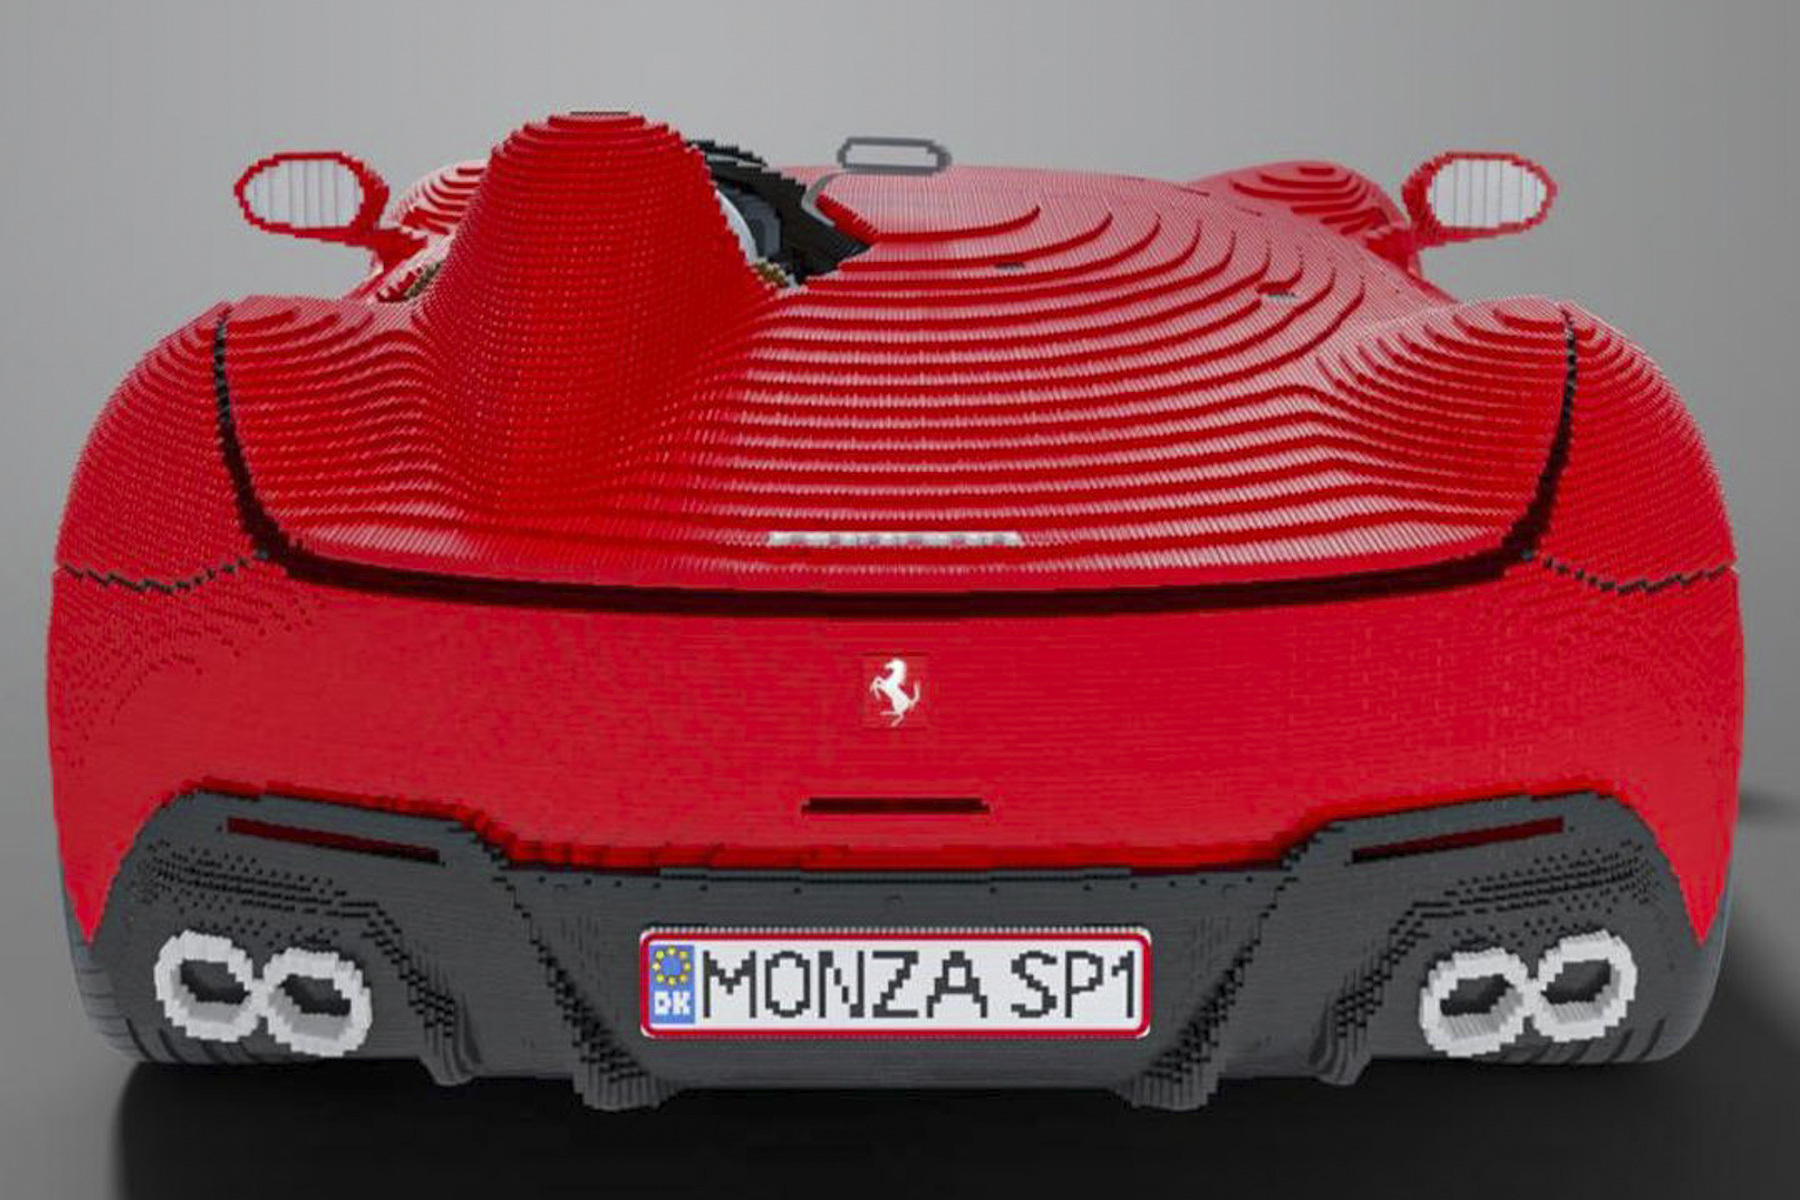 В датском Legoland из 383 тысяч кубиков Lego собрали полноразмерную копию Ferrari Monza SP1